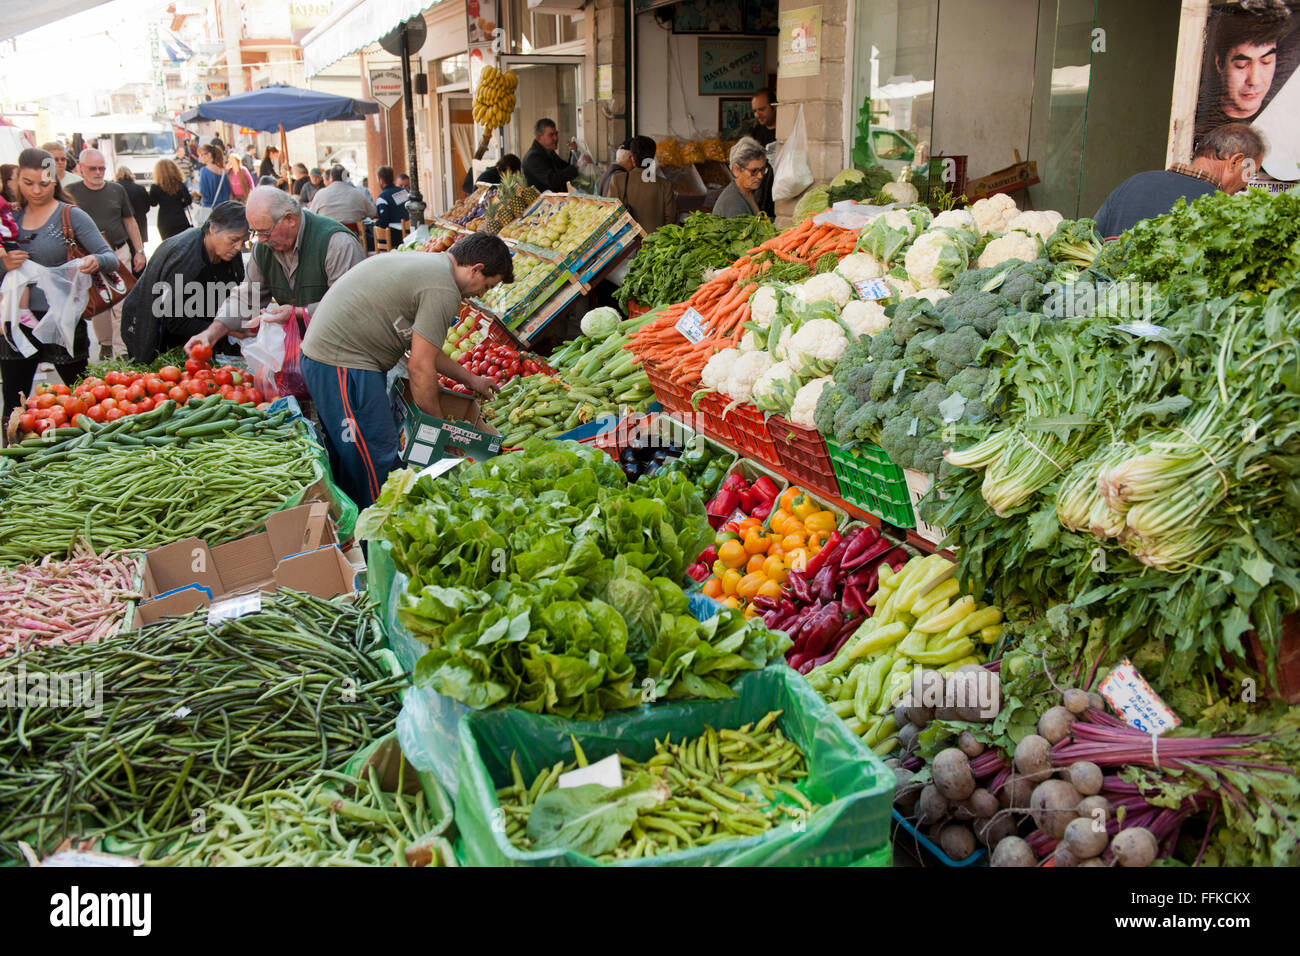 Griechenland, Kreta, Messara-Ebene, Samstagsmarkt in paludi, hier trifft man sich zwischen Obst und Gemüse, Fisch, Käse, Haushalt Foto Stock